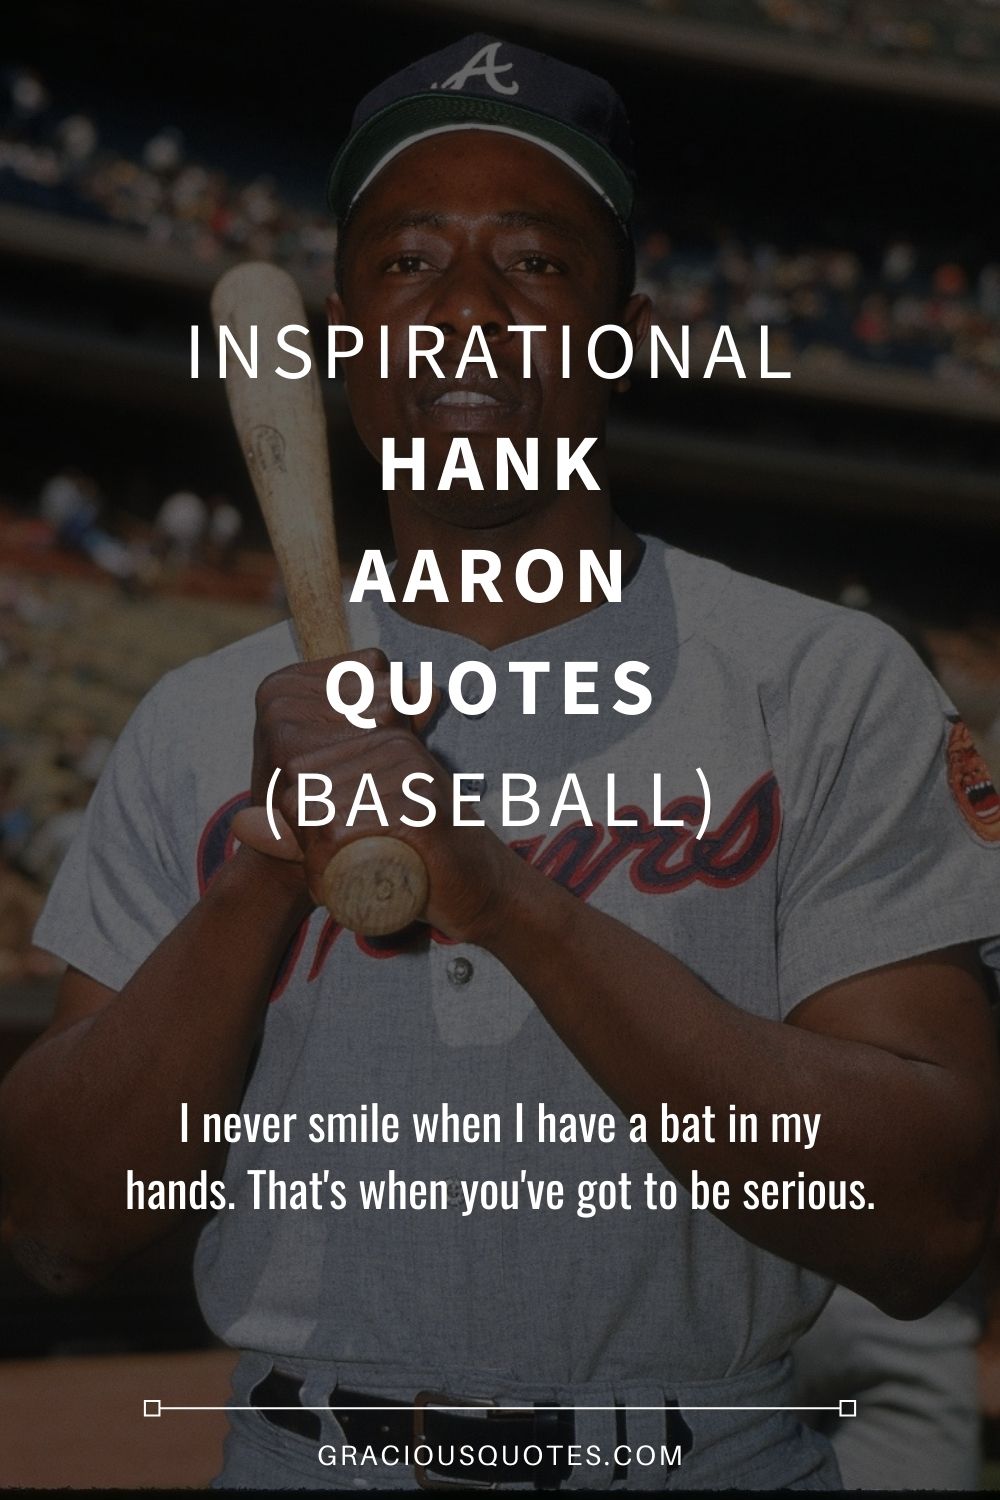 Inspirational Hank Aaron Quotes (BASEBALL) - Gracious Quotes